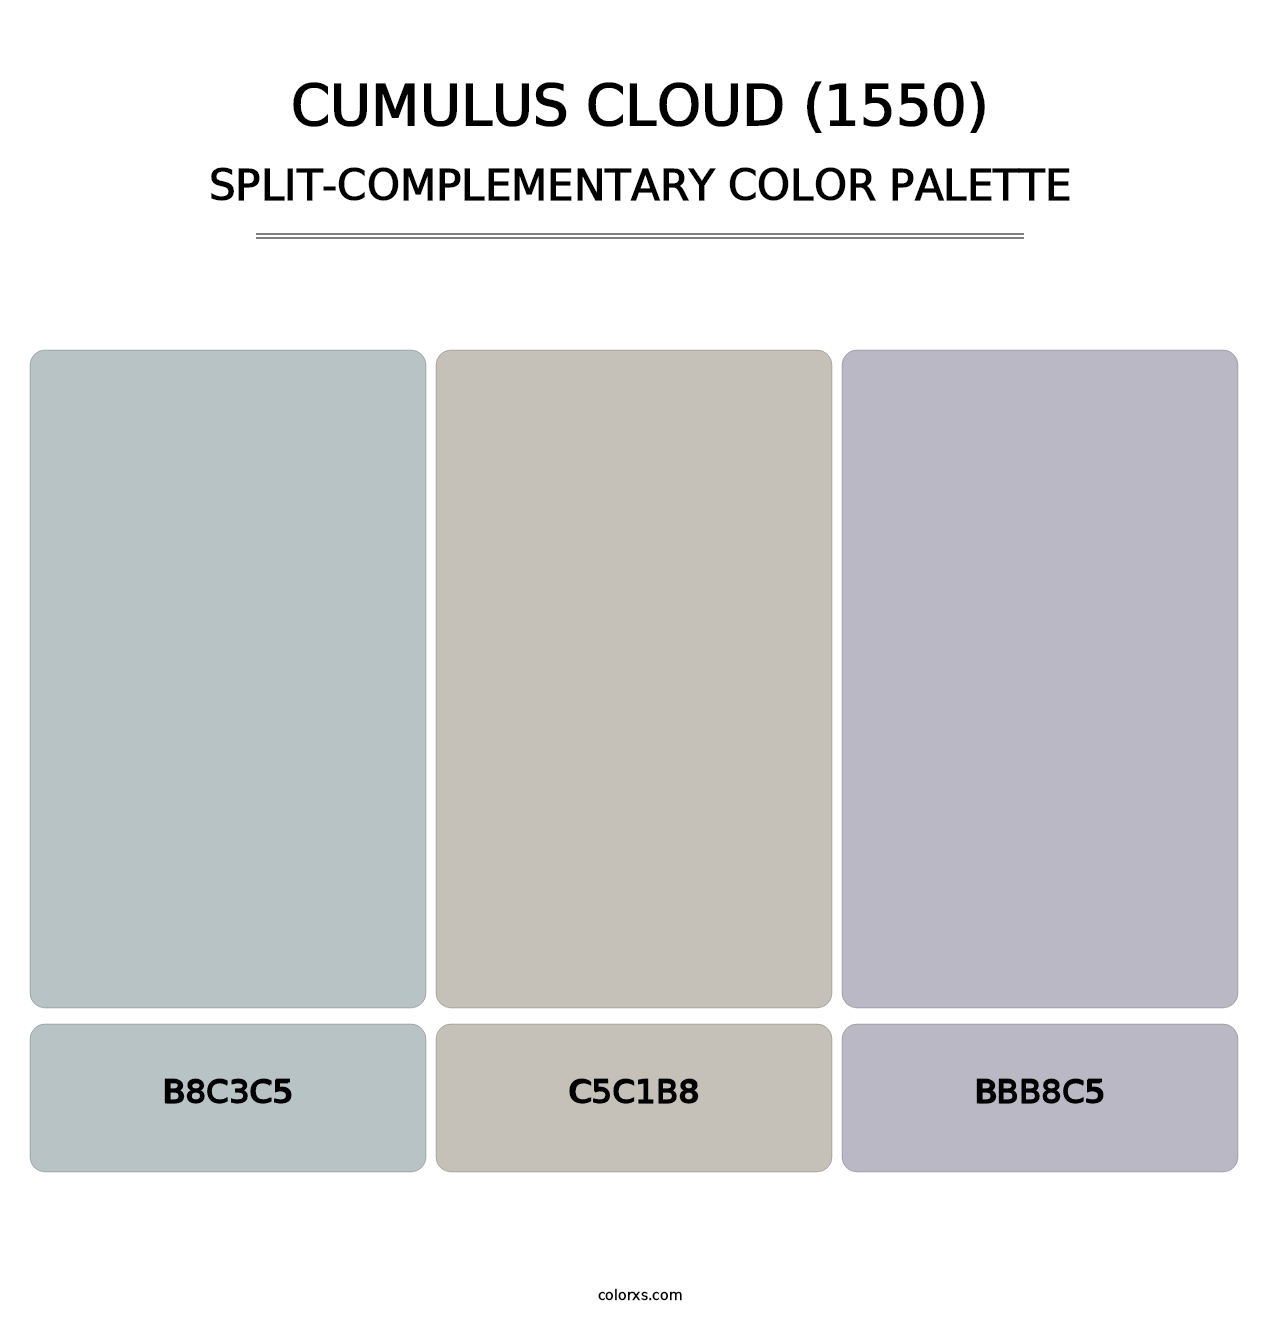 Cumulus Cloud (1550) - Split-Complementary Color Palette